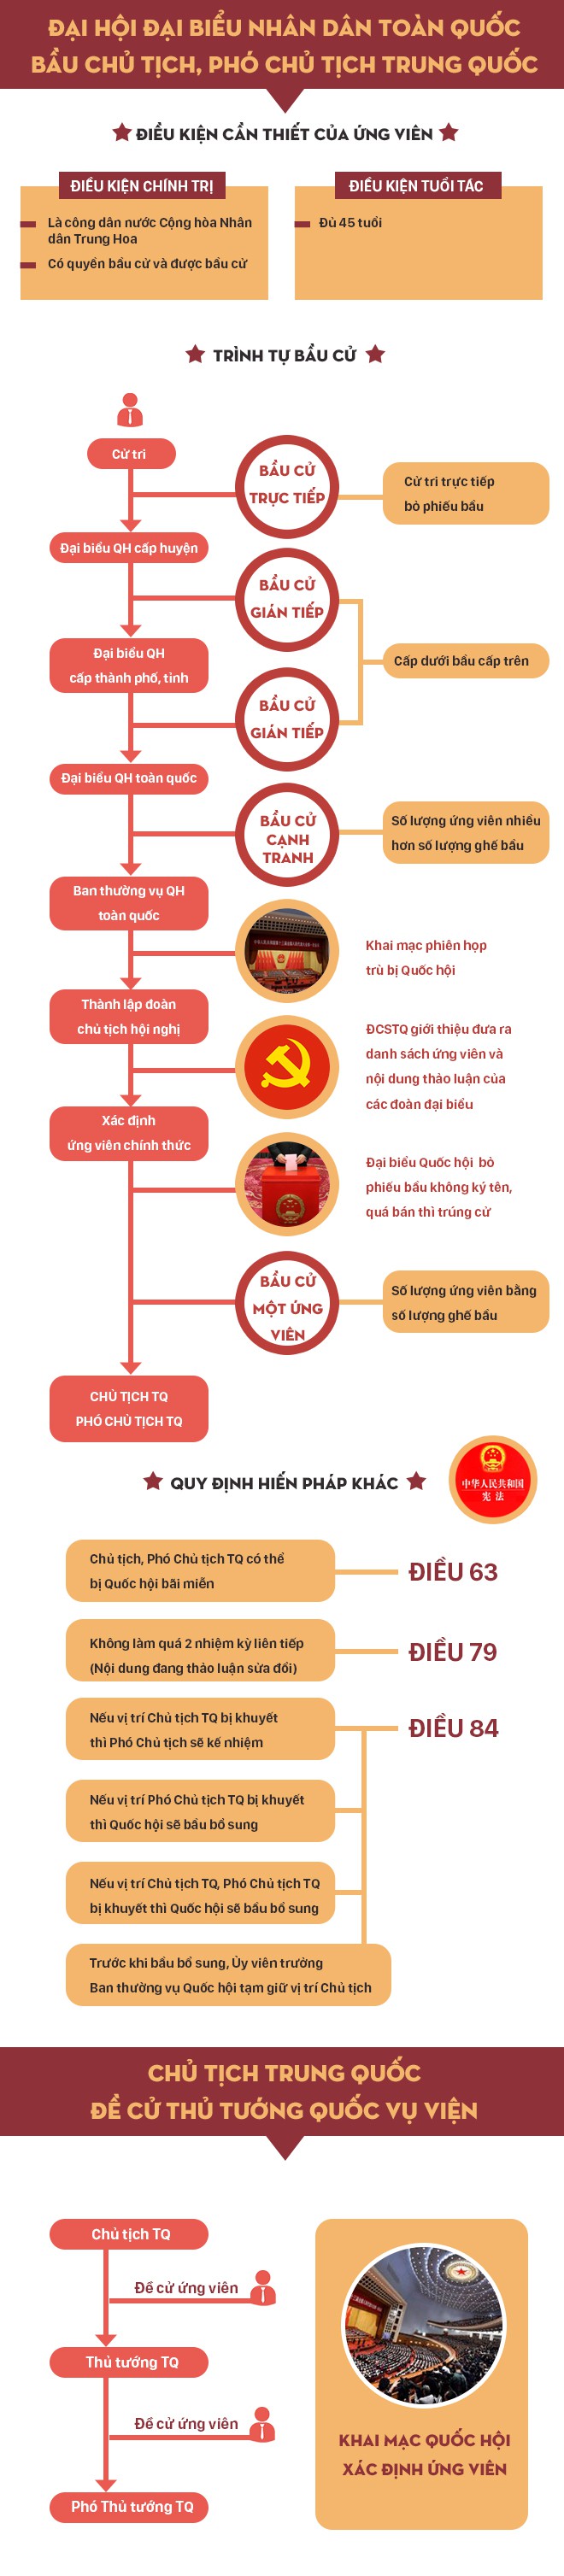 [Infographic] Chủ tịch, Phó Chủ tịch, Thủ tướng Trung Quốc được bầu như thế nào? - Ảnh 1.